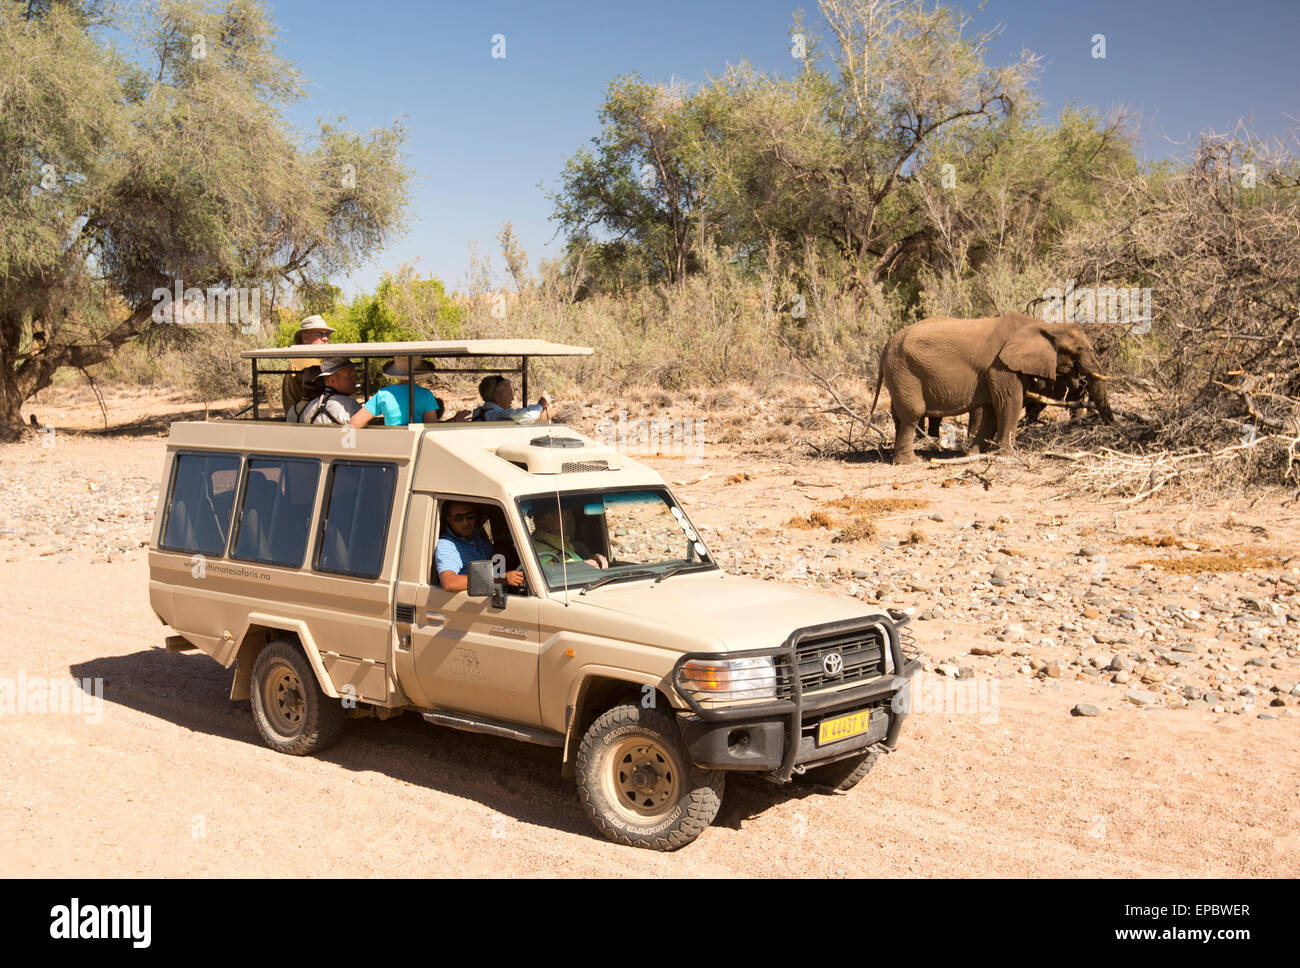 Africa, Namibia. Land Cruiser pulled next to wild elephants. Stock Photo